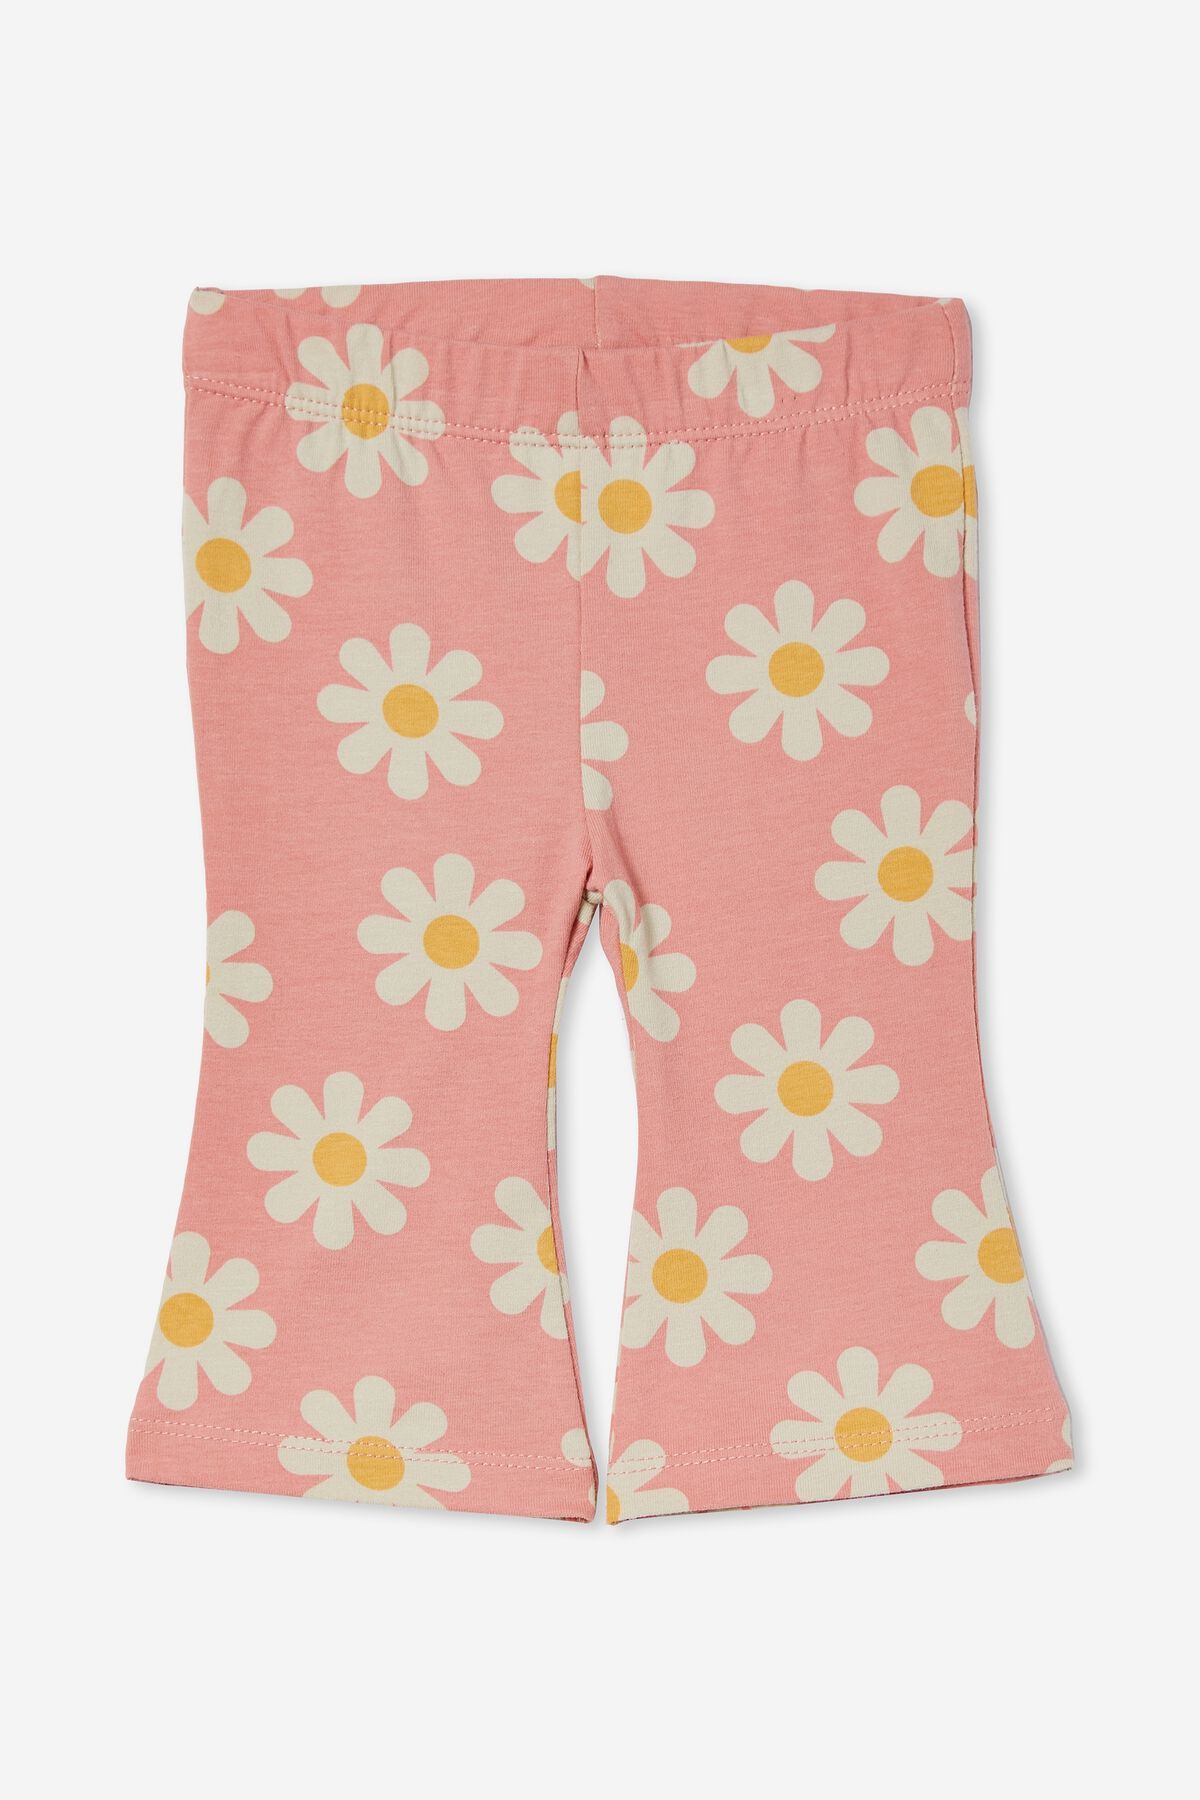 Floren Flare Pants | Cotton On (ANZ)